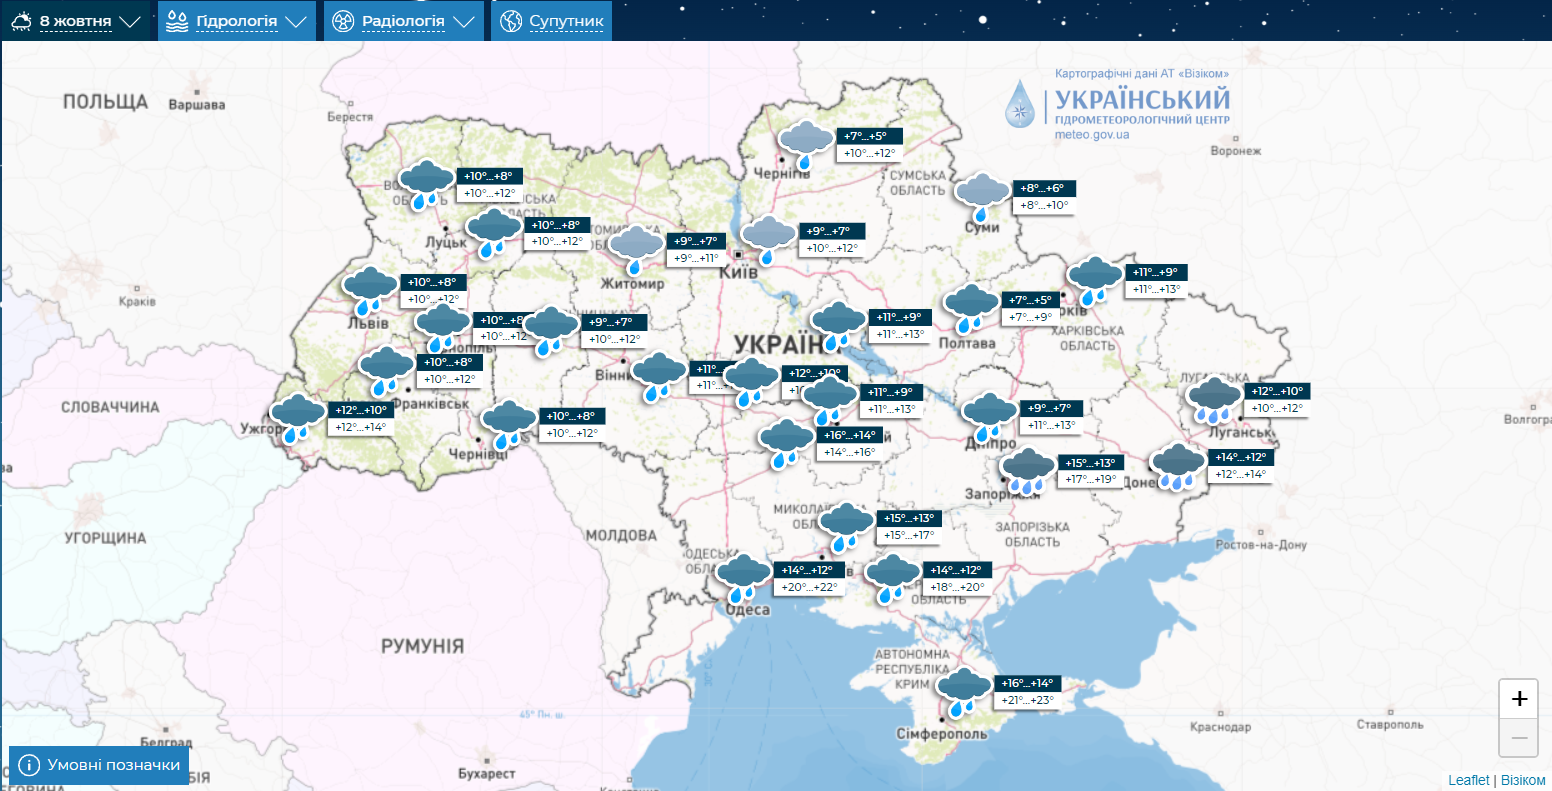 В Украине ударят заморозки: синоптикиня предупредила о резком изменении погоды. Карта